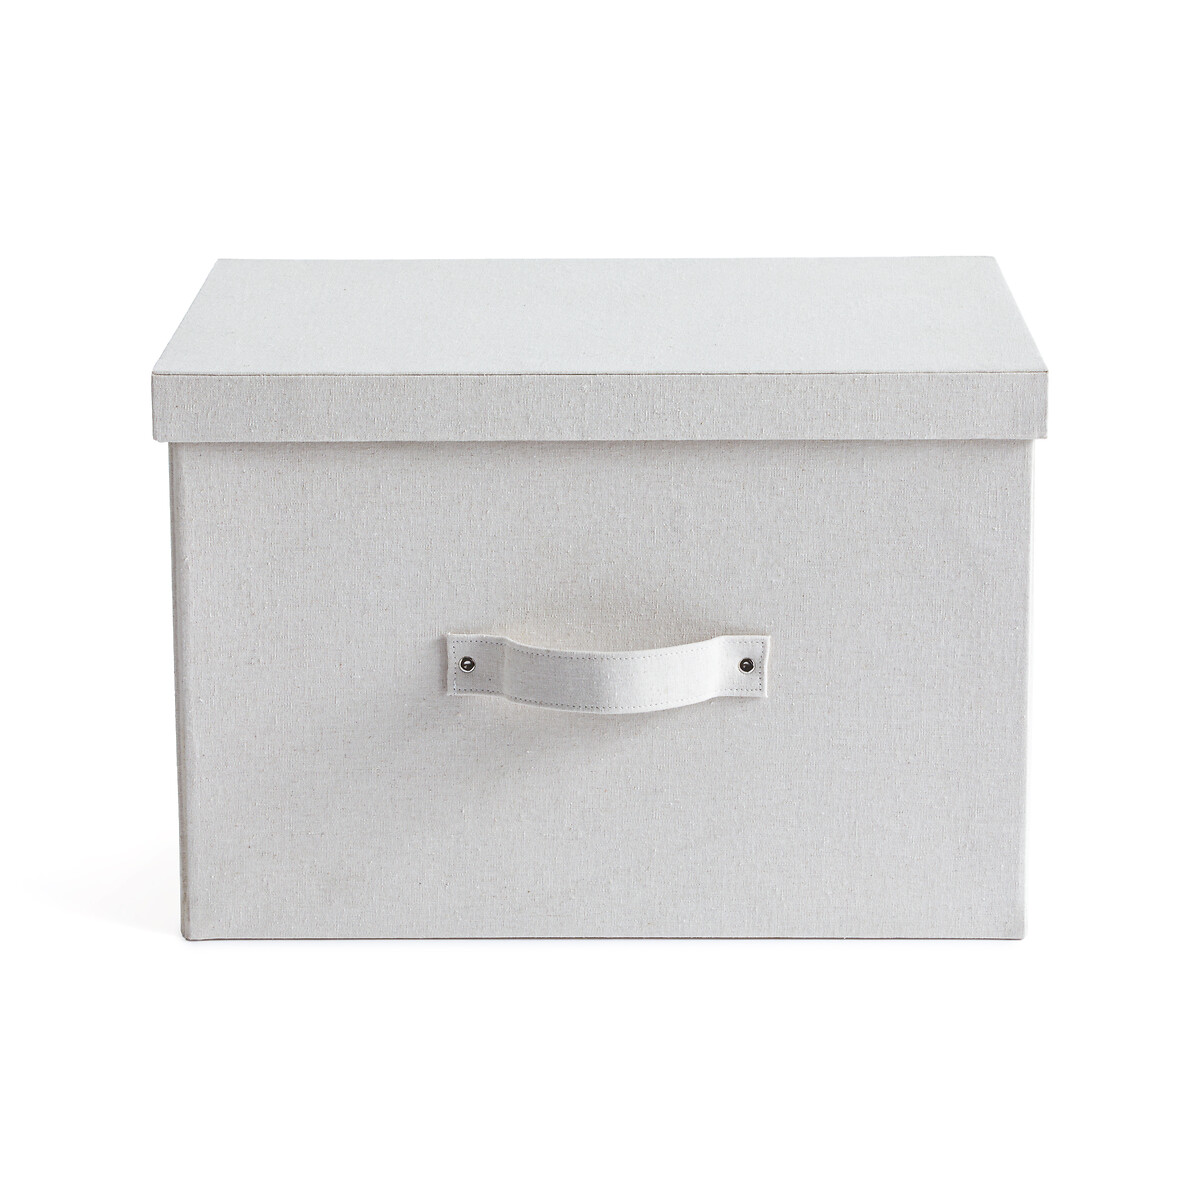 Коробка LaRedoute Коробка Для хранения из льна Lisandre единый размер бежевый